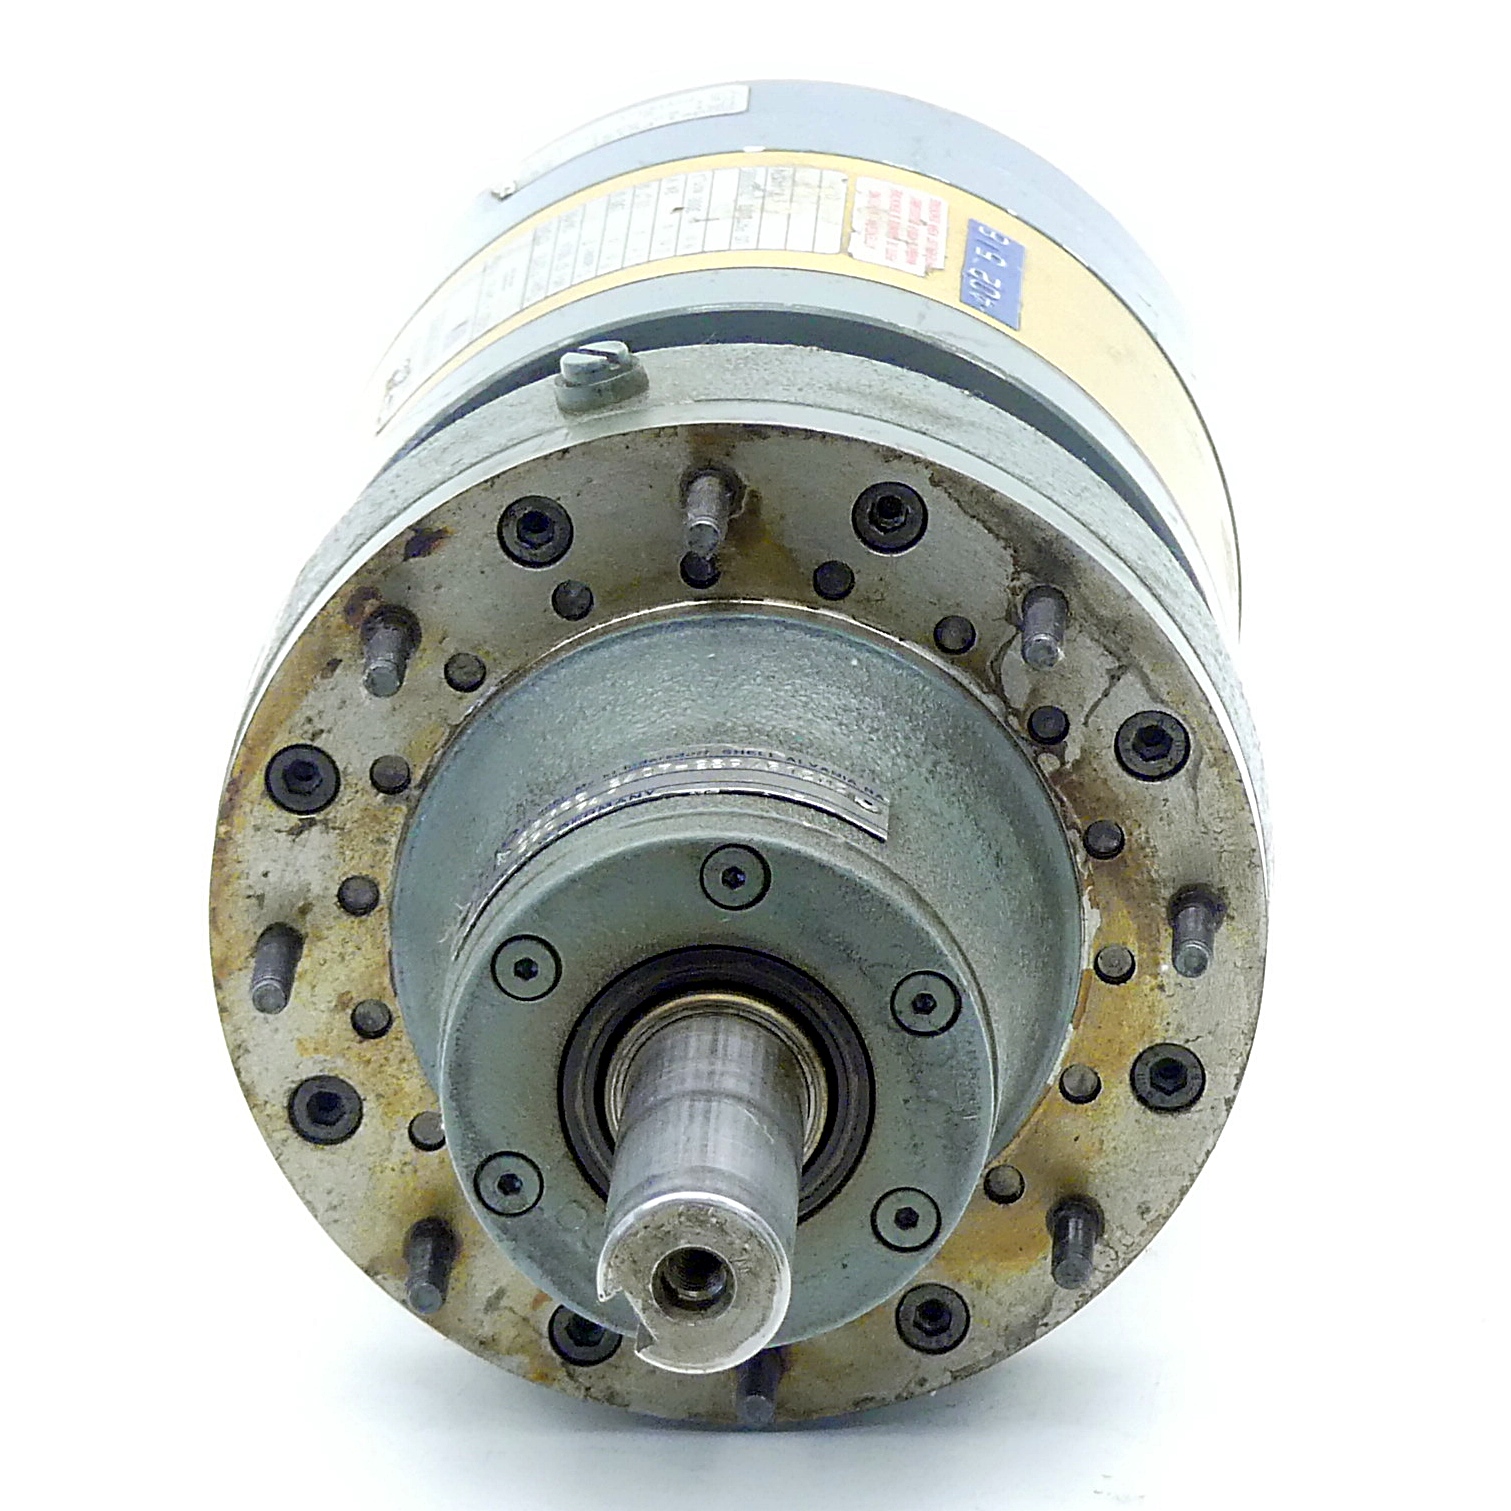 Getriebemotor F12M2 57348 + XFMGS 2/07-289/f12M2 